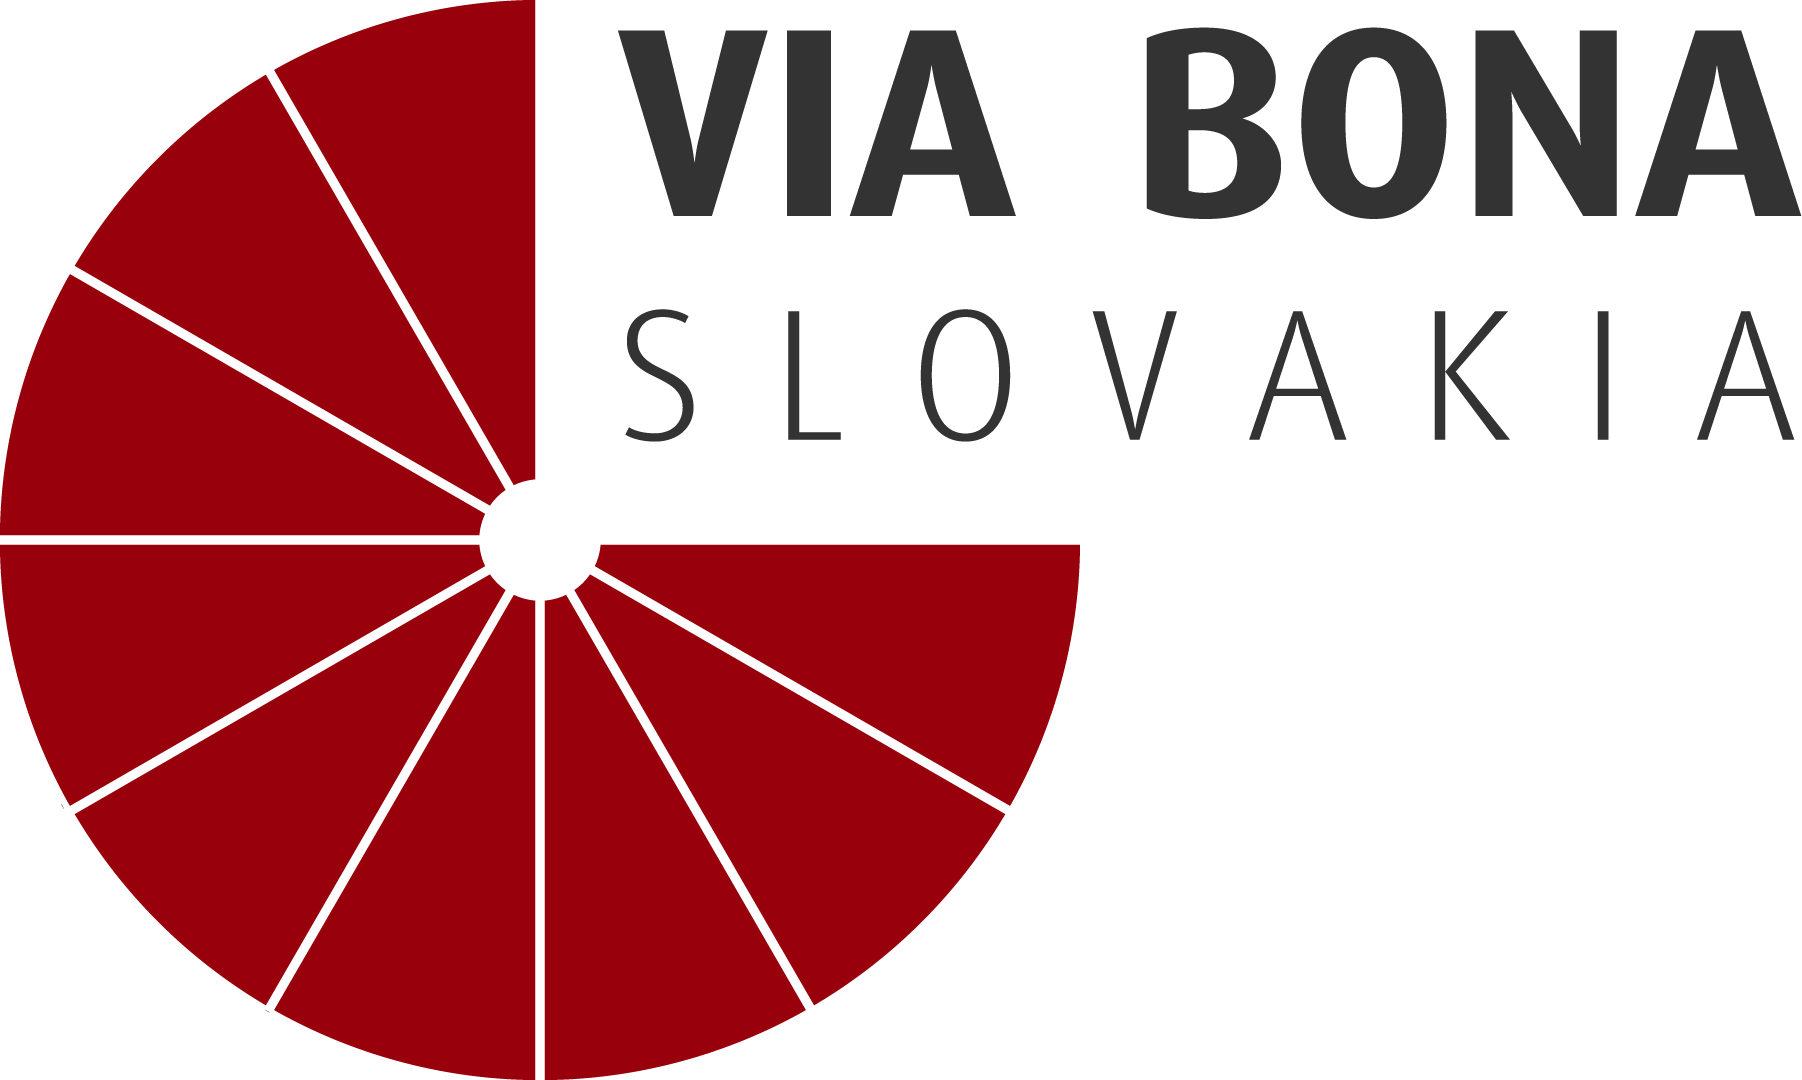 Green Company – Via Bona Slovakia logo